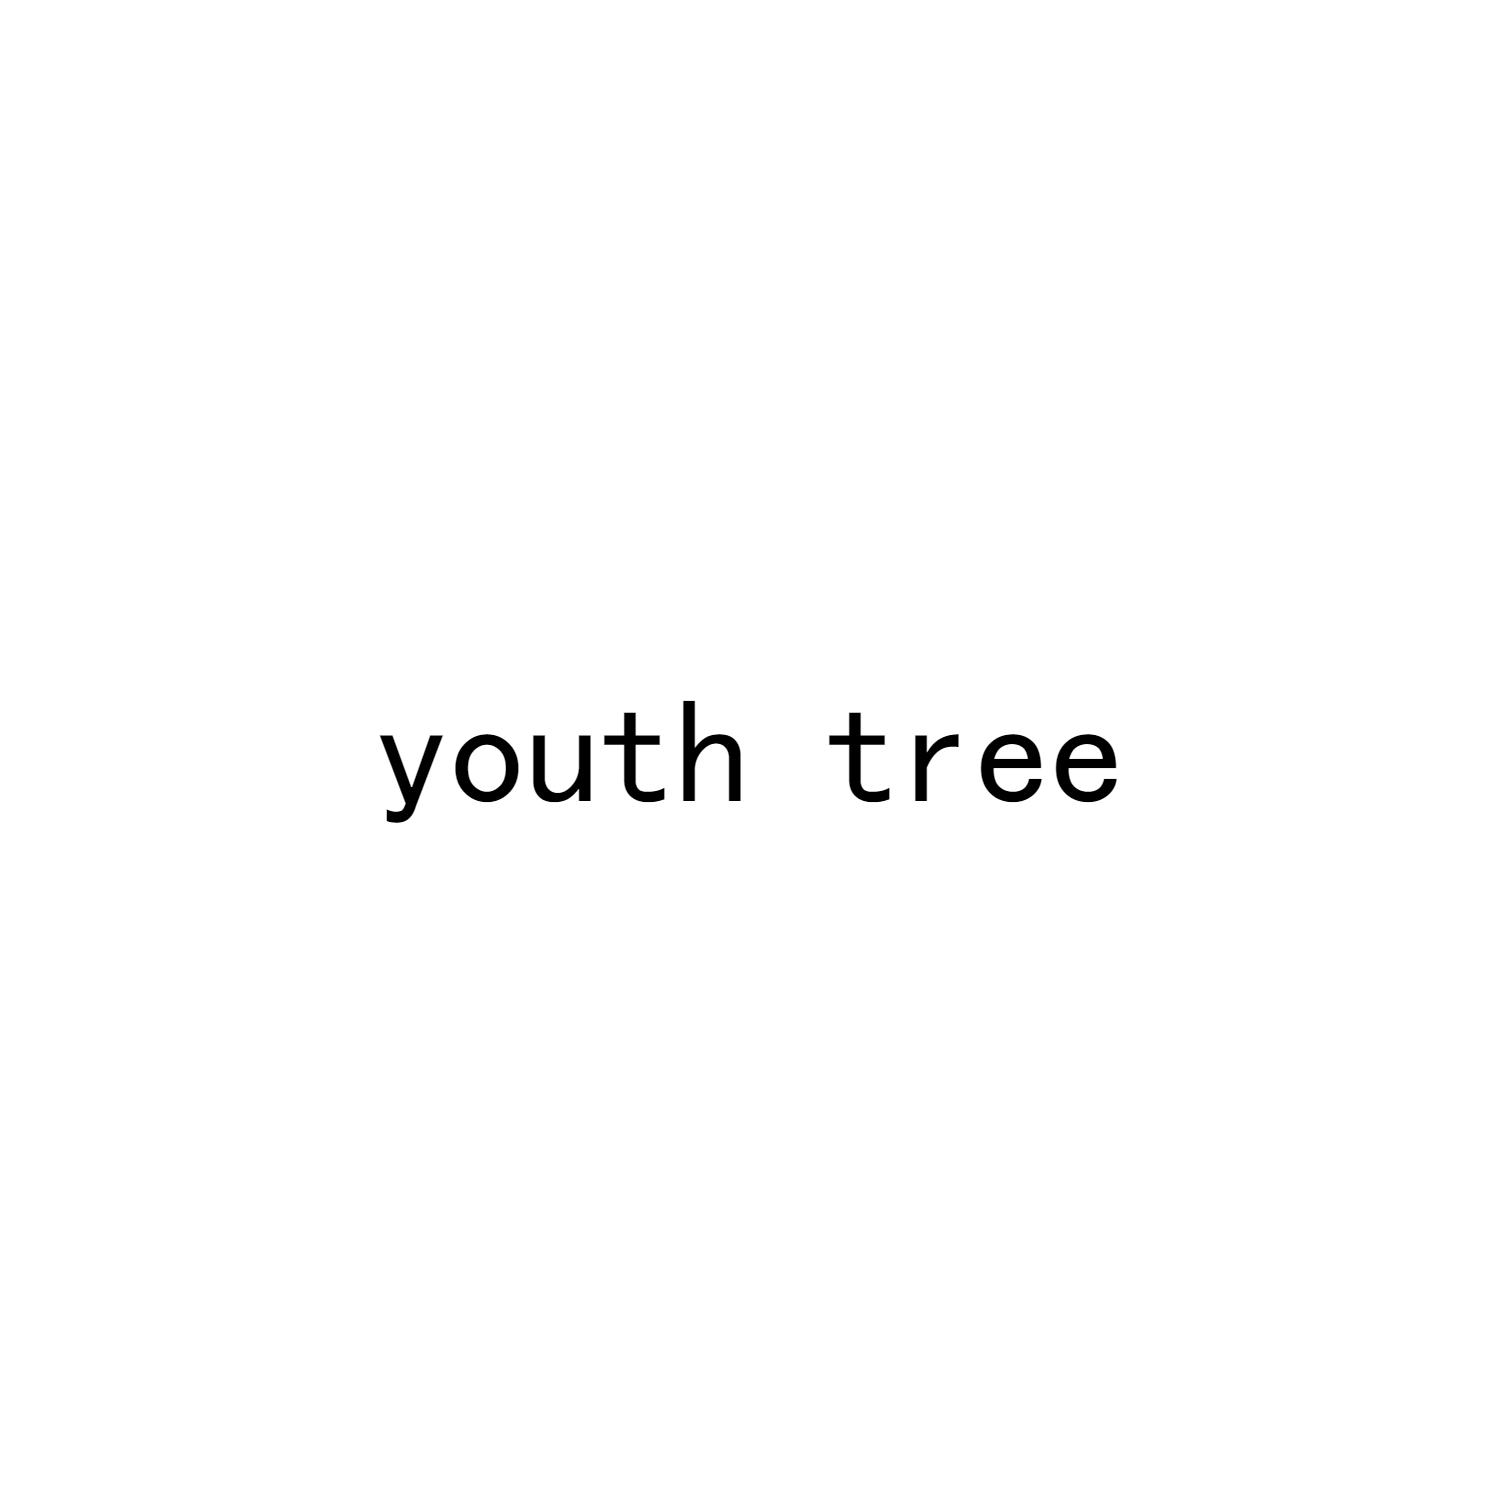 youth tree